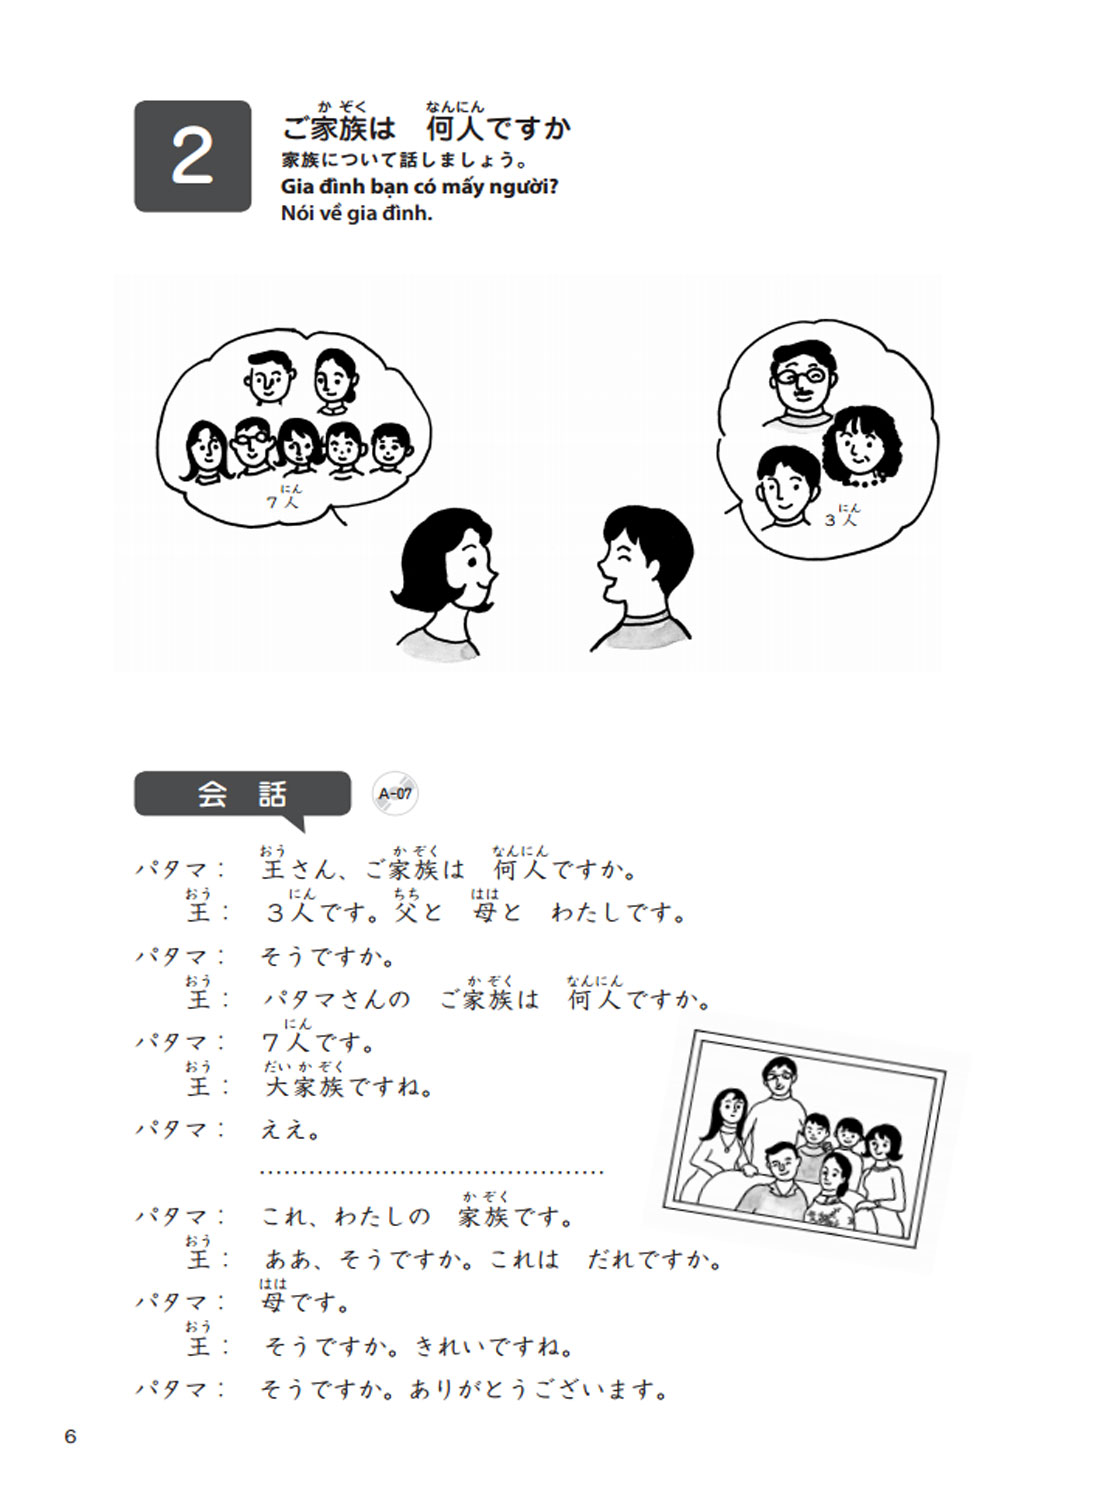 Giáo Trình Tiếng Nhật Tổng Hợp Dành Cho Người Việt Sơ Cấp - Tập 1 (Kèm CD) _MT